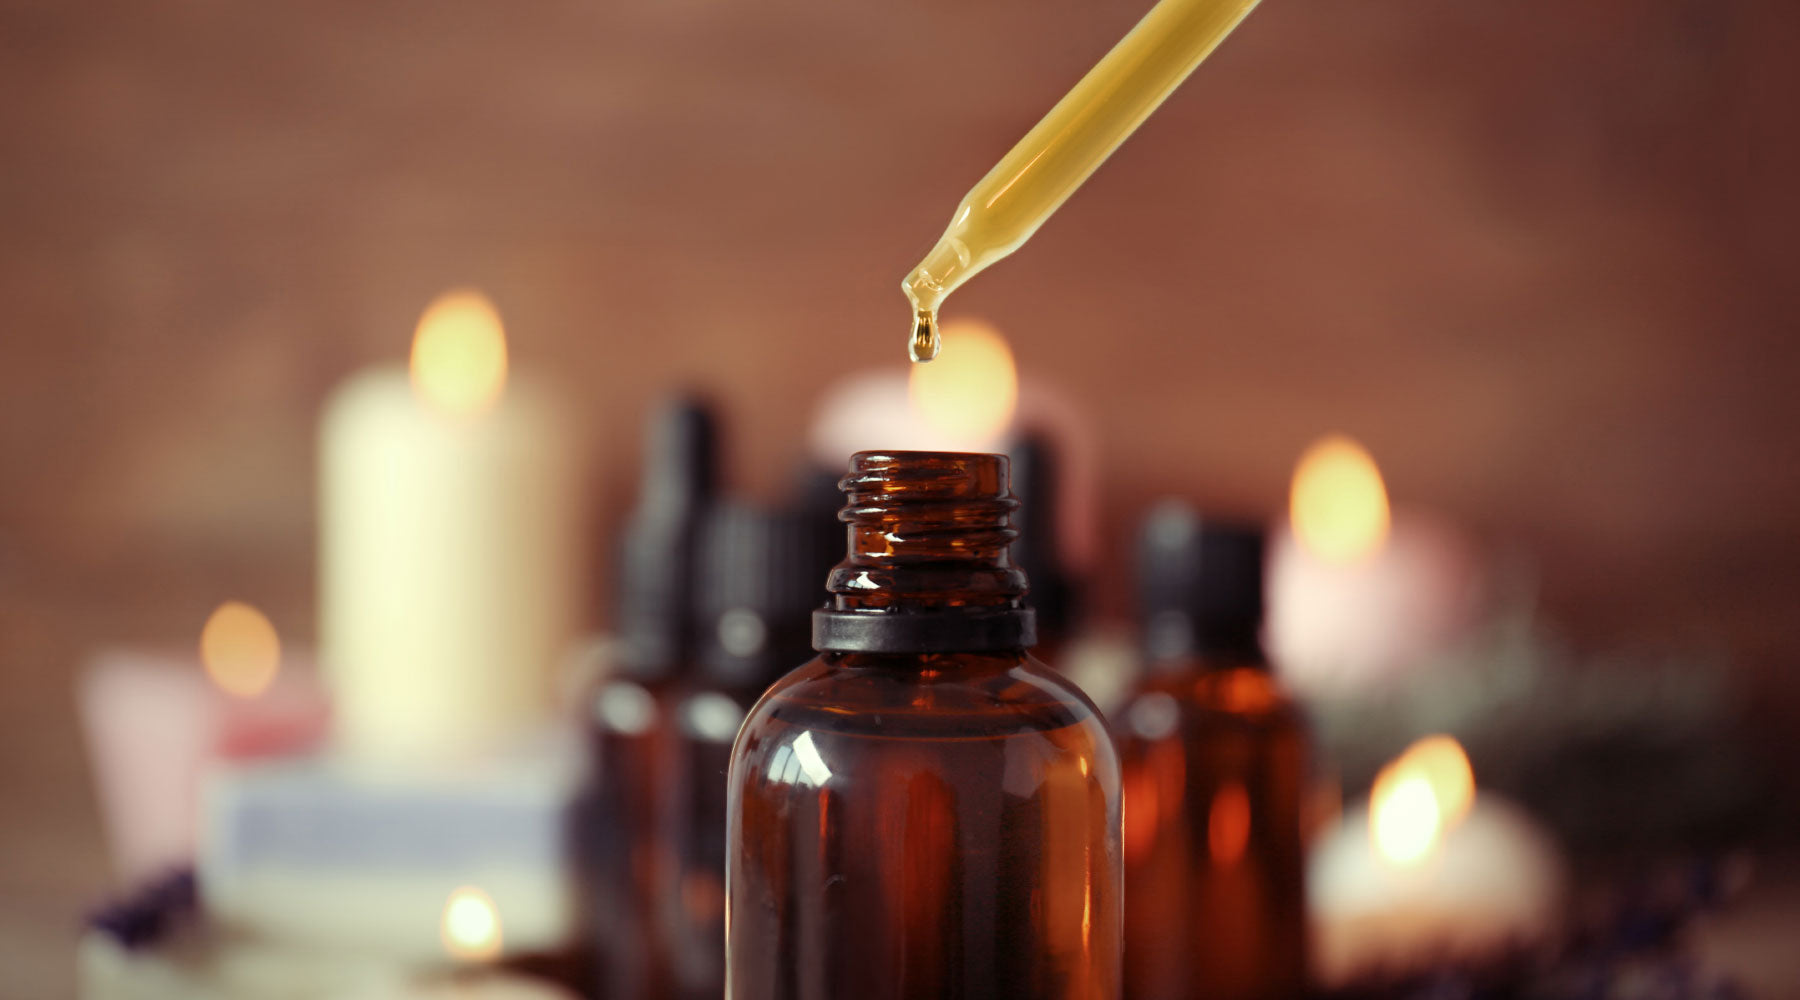 zakraplacz oleju Manuka - korzyści przeciwwirusowe i antybakteryjne